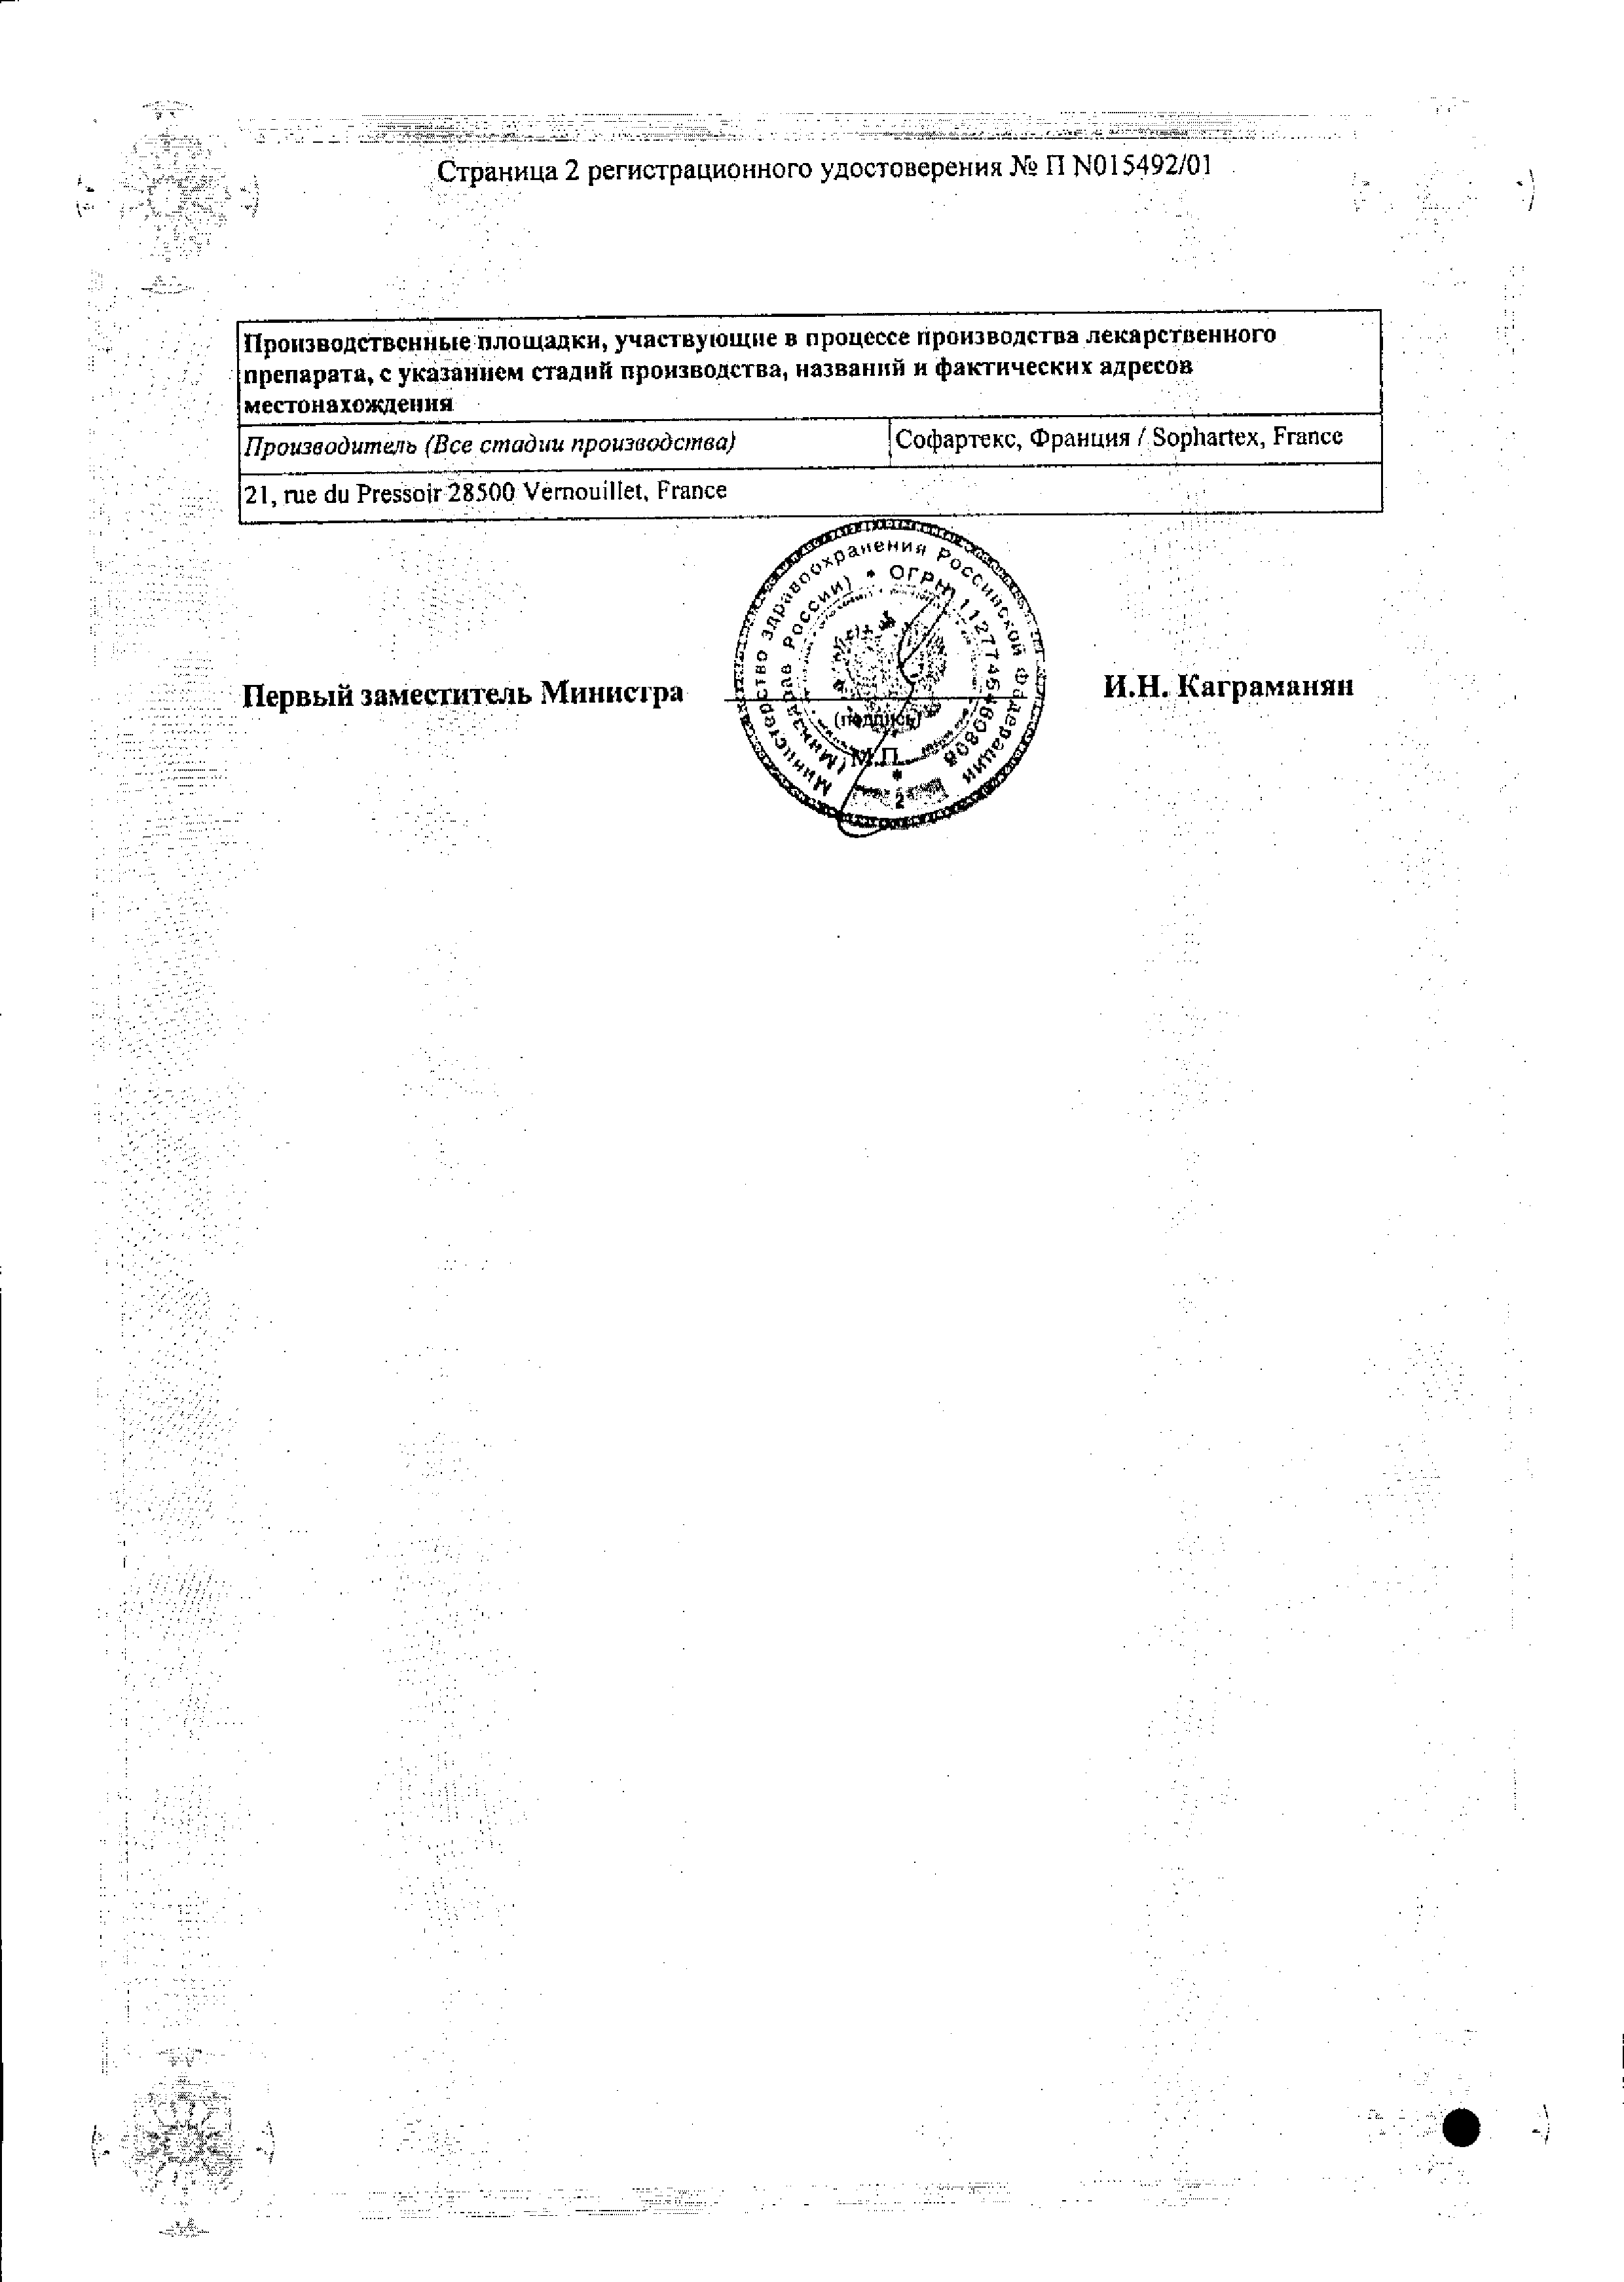 Полидекса с фенилэфрином сертификат